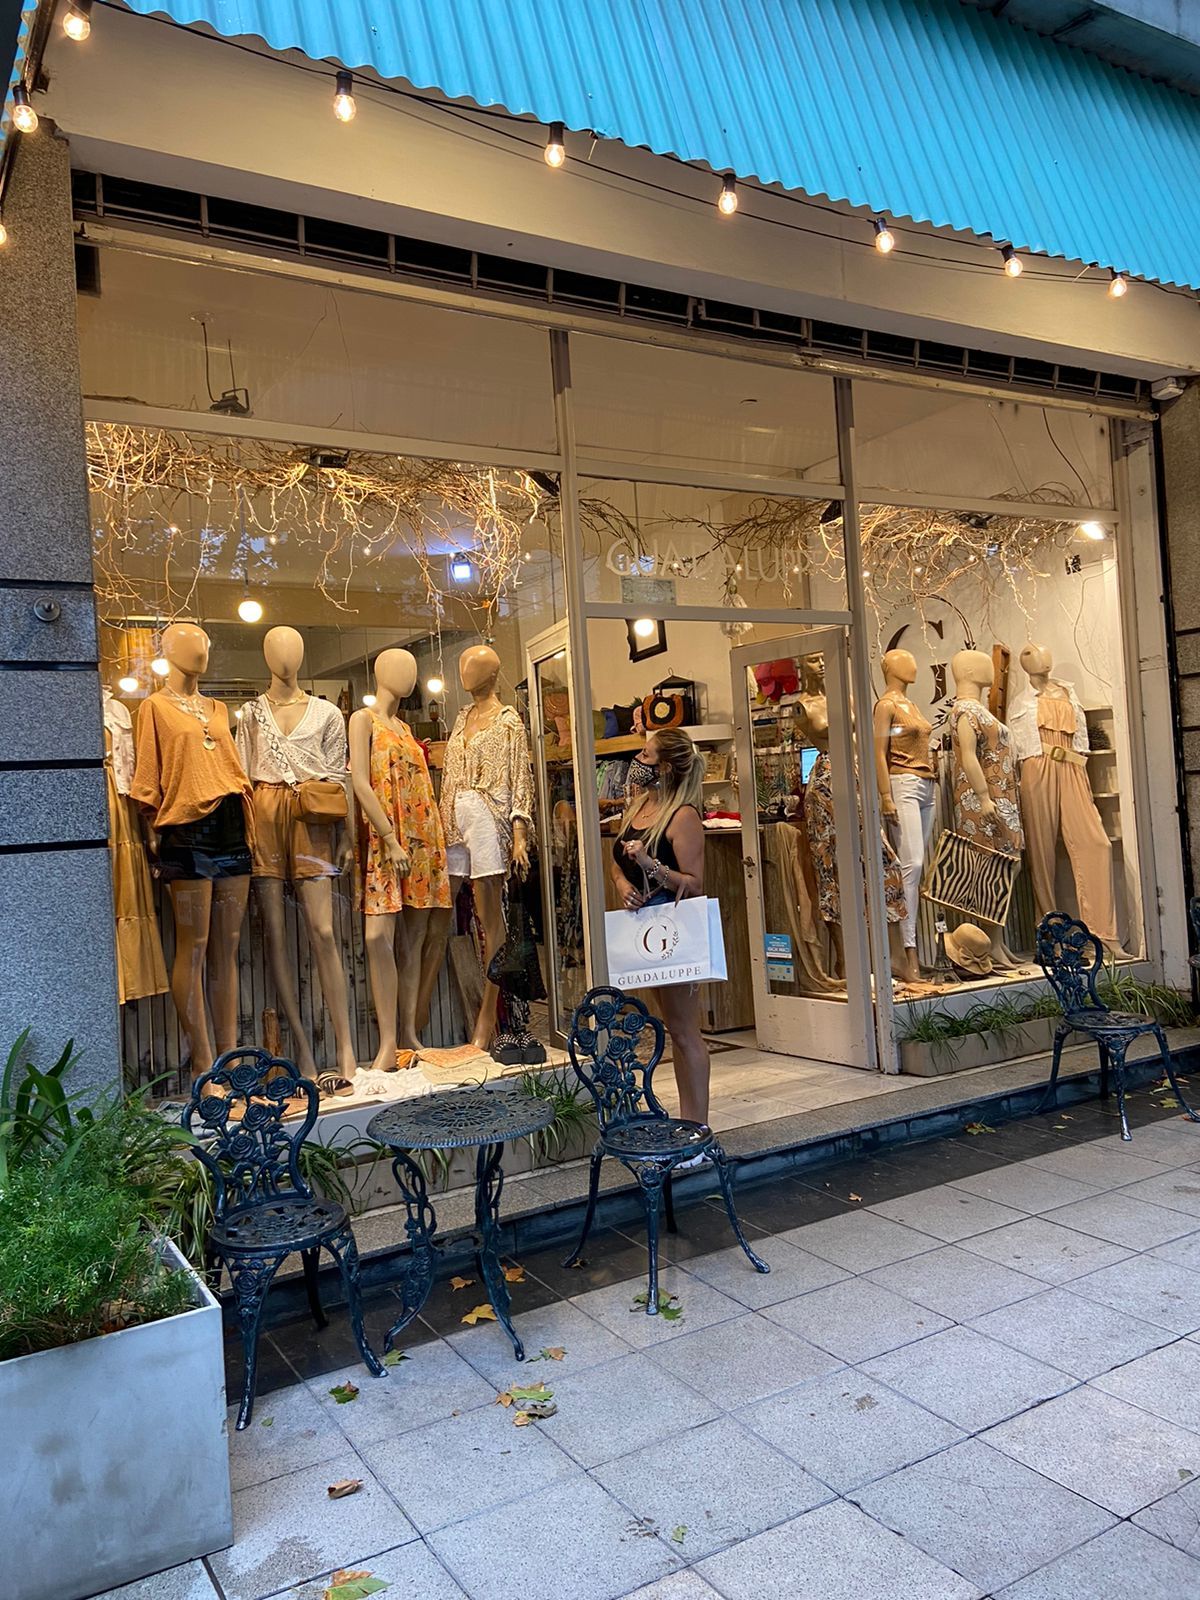 El local de ropa Guadalupe, ubicado en Malvinas al 155 en Monte Grande, es uno de los pocos comercios que trabajan con todos los talles.